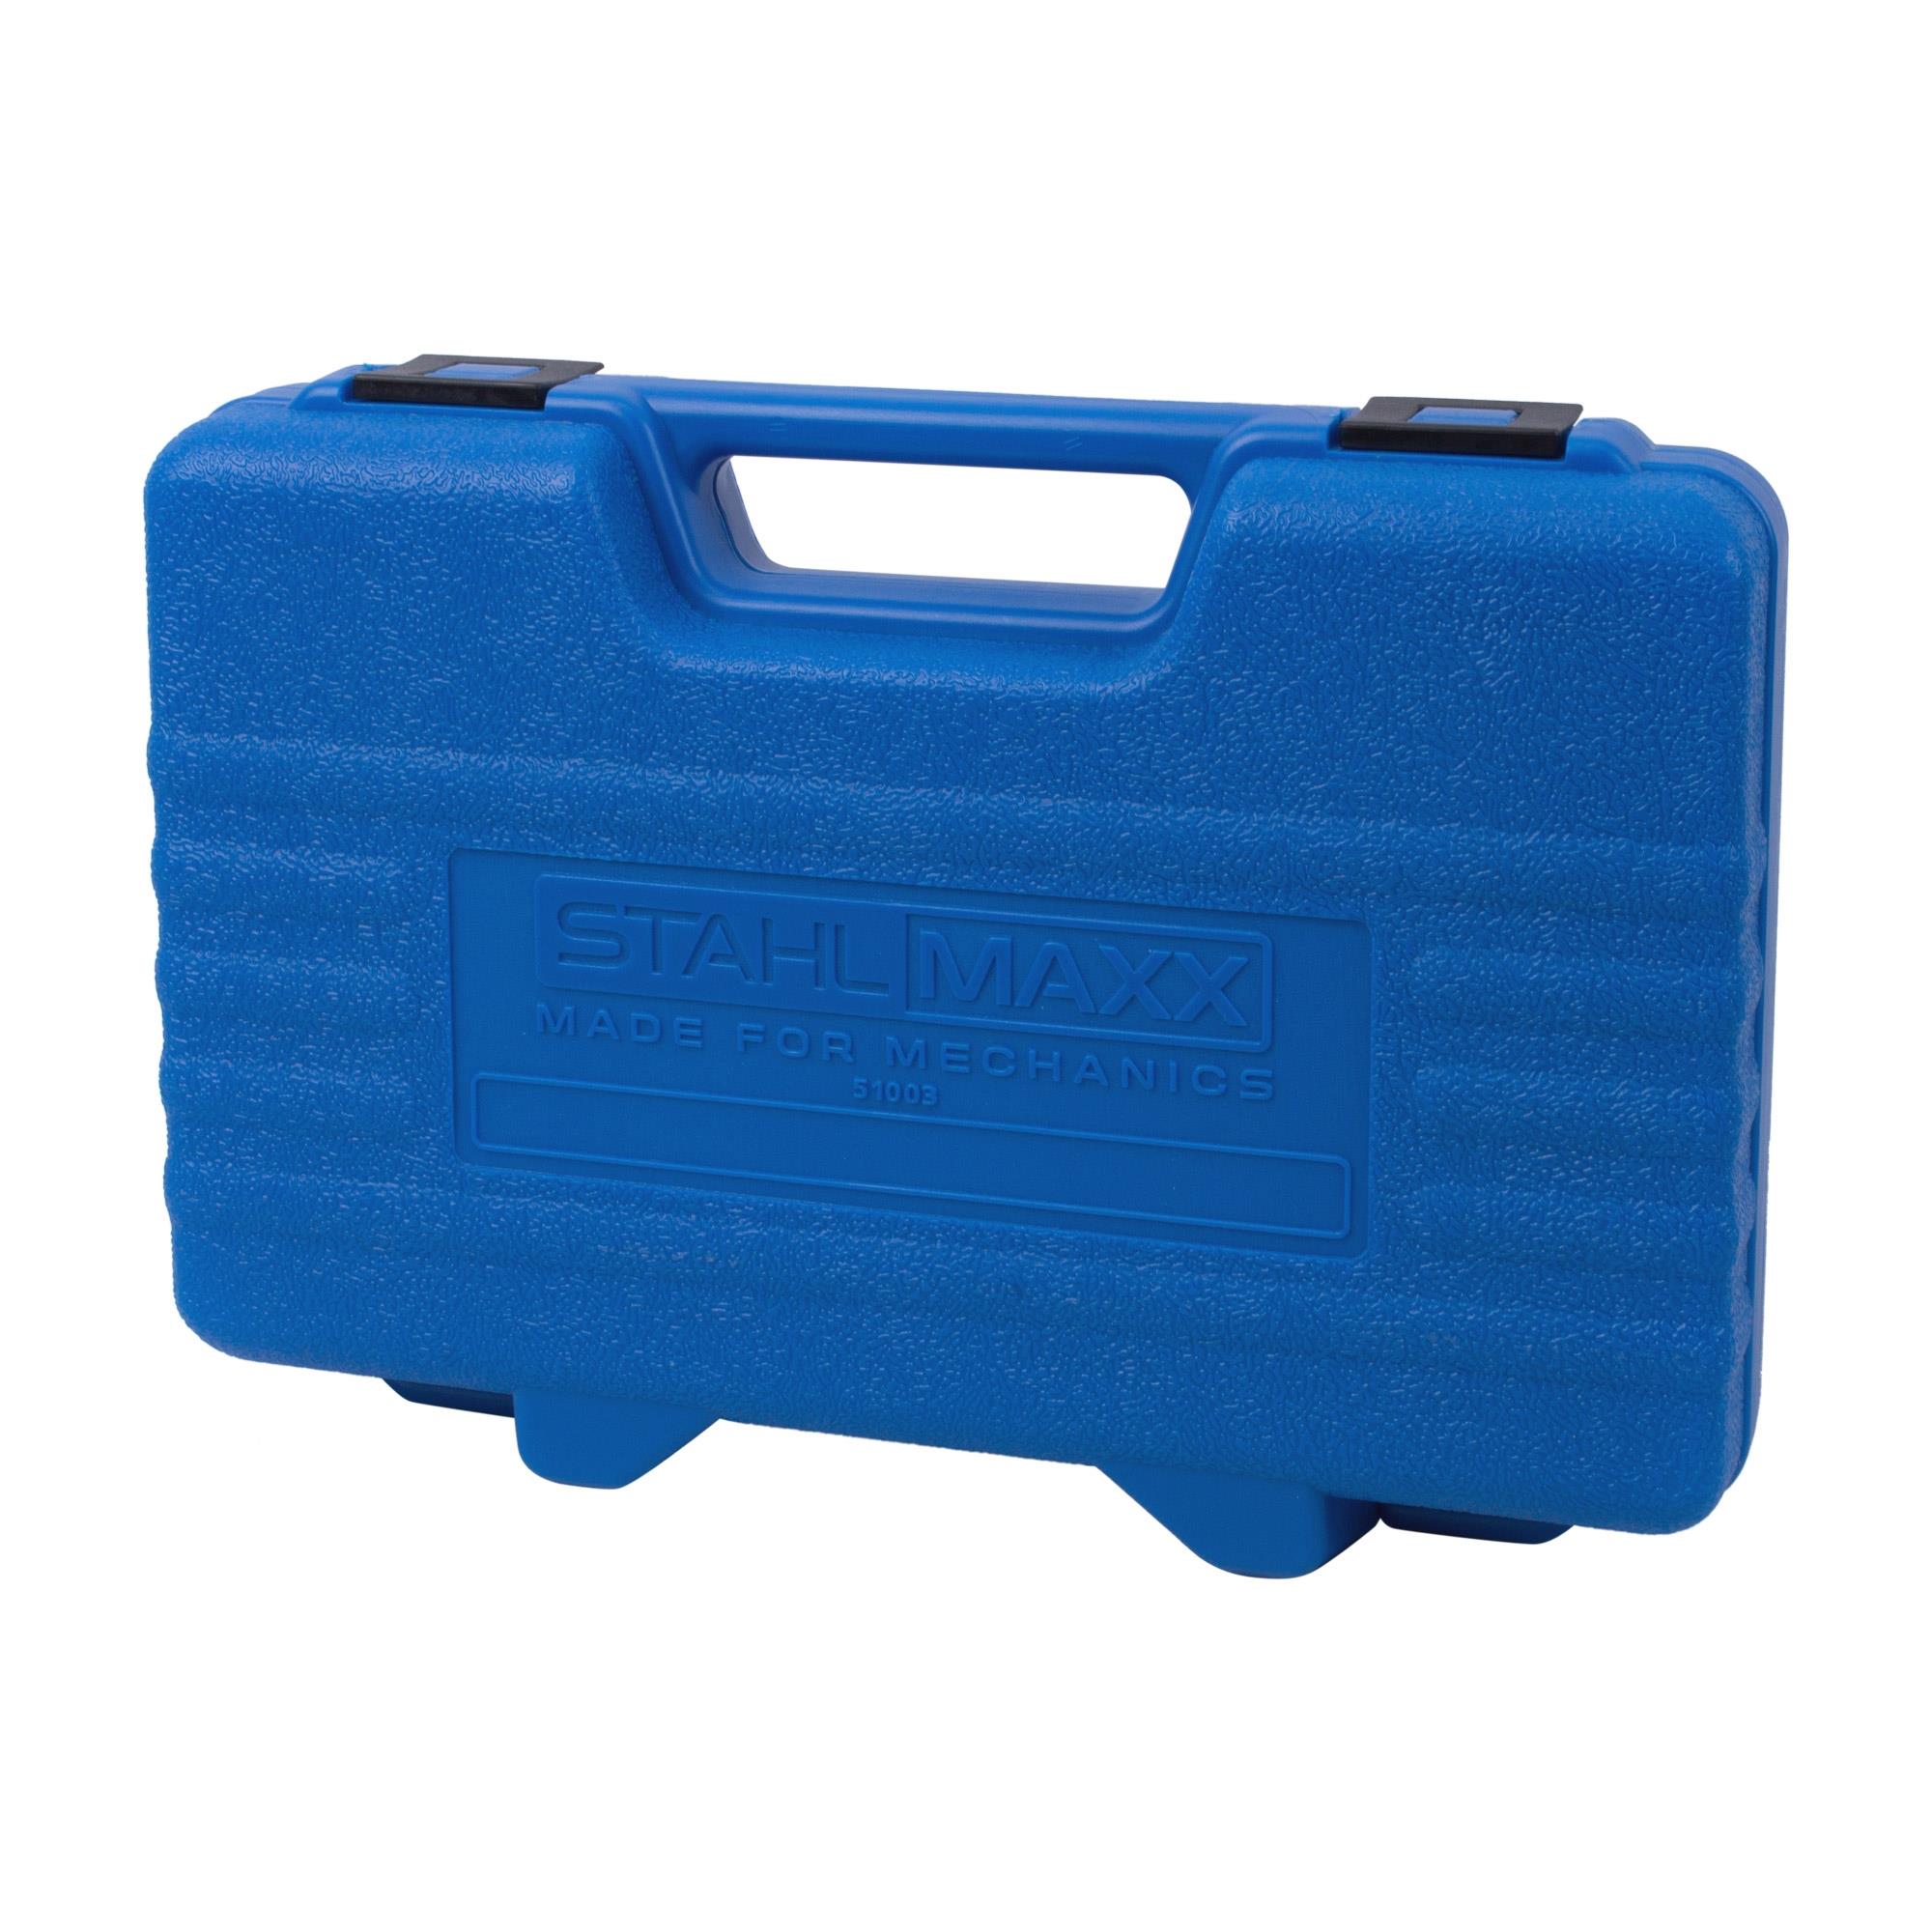 kleine Ausführung 390 mm x 185 mm Kunststoff Koffer für Werkstattordnung 